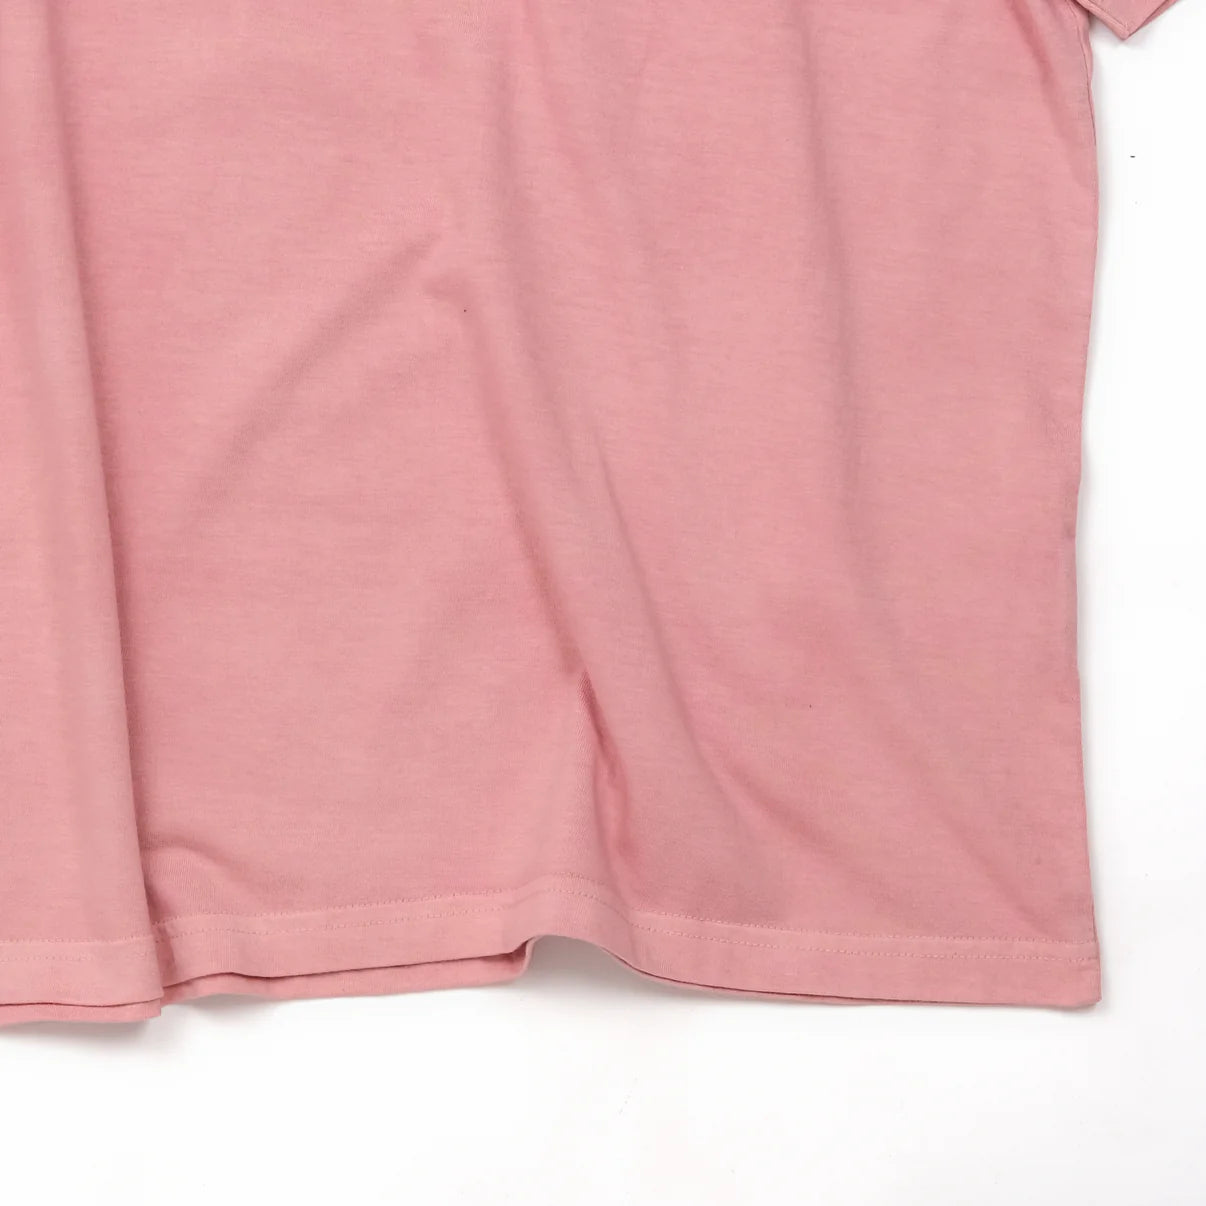 Bakr | Regular Fit Mint Pink Tshirt